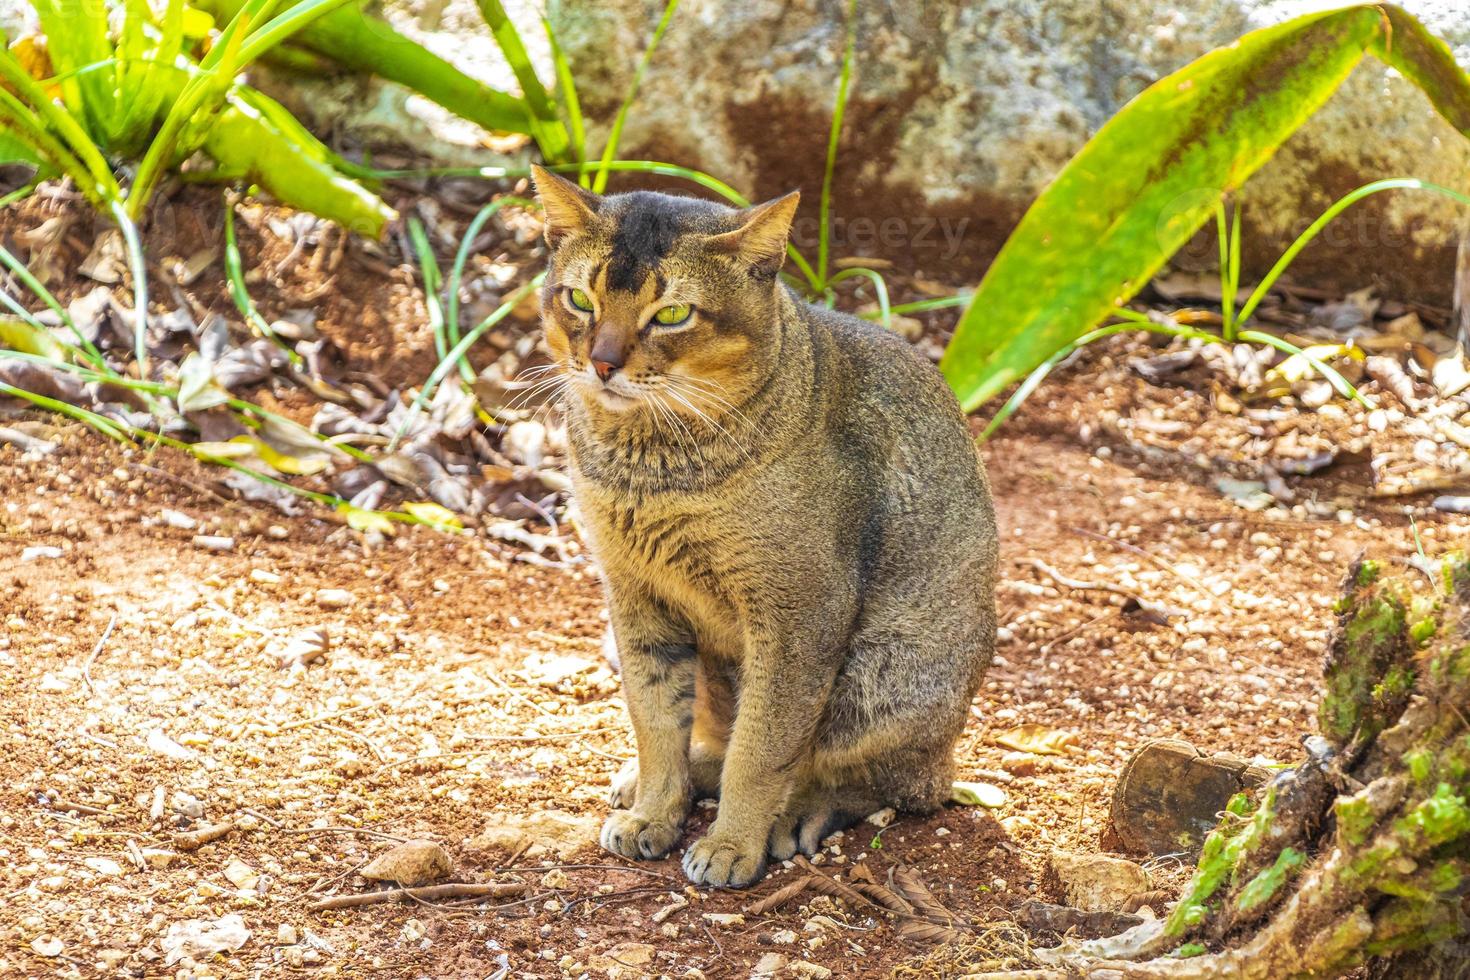 lindo gato bonito com olhos verdes na selva tropical méxico. foto